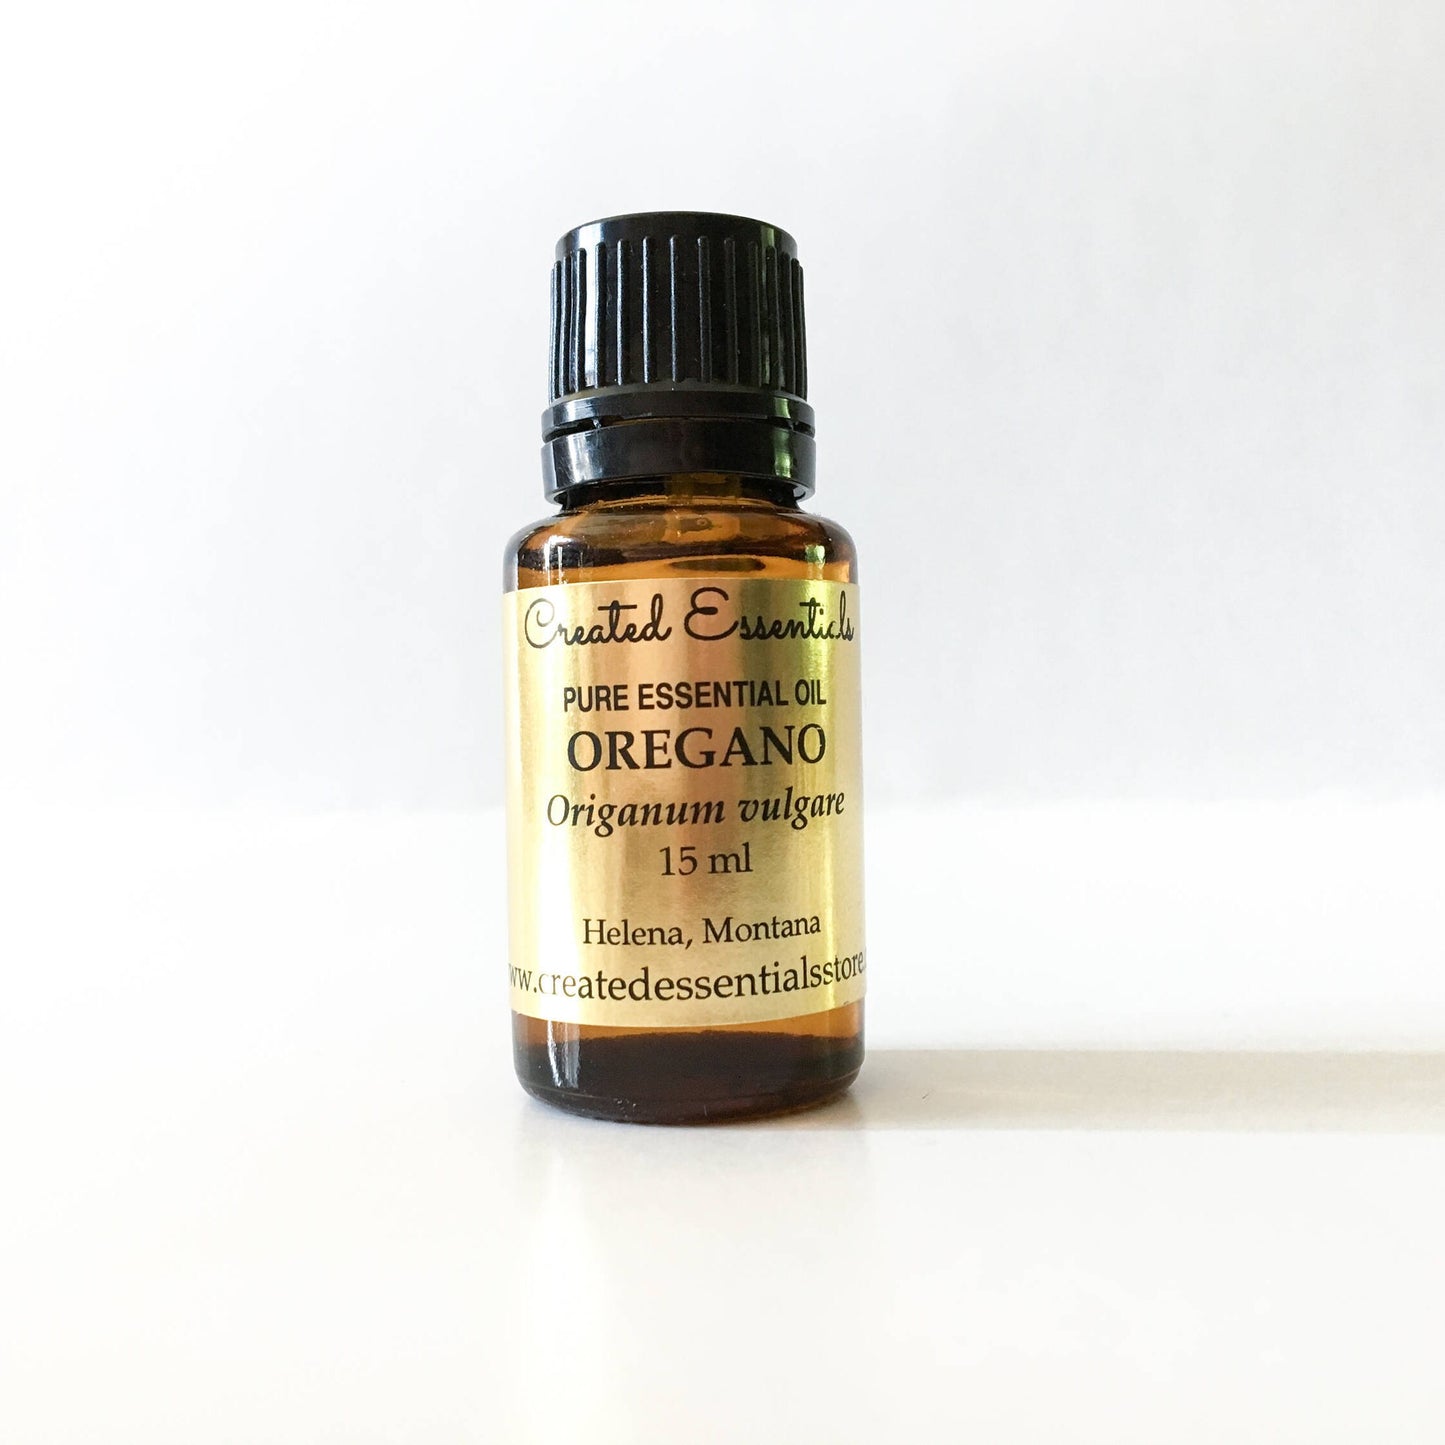 Oregano Essential Oil | 100% Pure Essential Oil of Oregano | Therapeutic Oregano Oil | Aromatherapy Oil